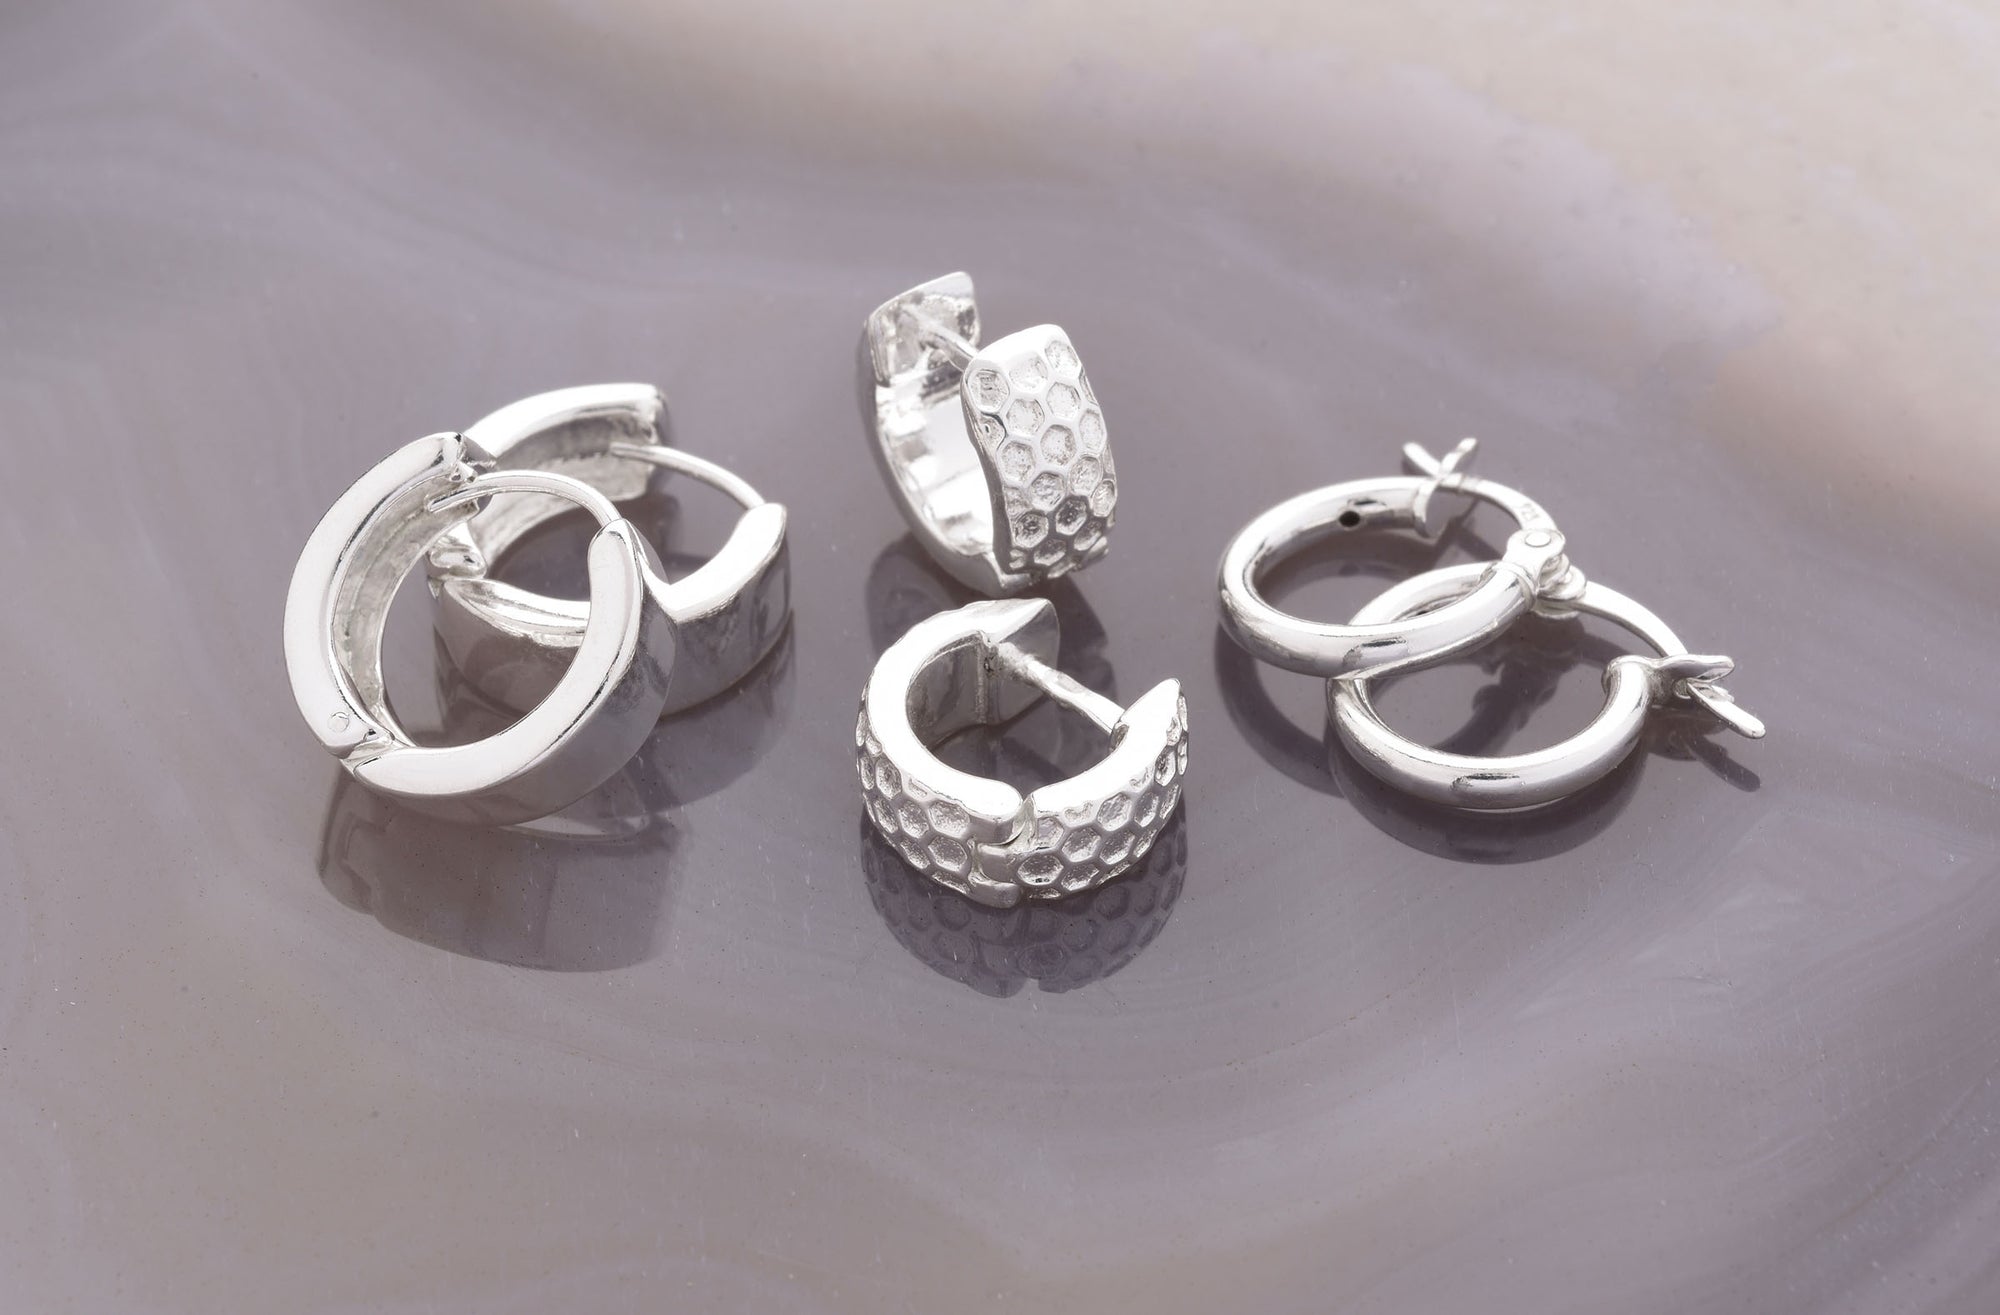 Hoop earrings in sterling silver and gold vermeil